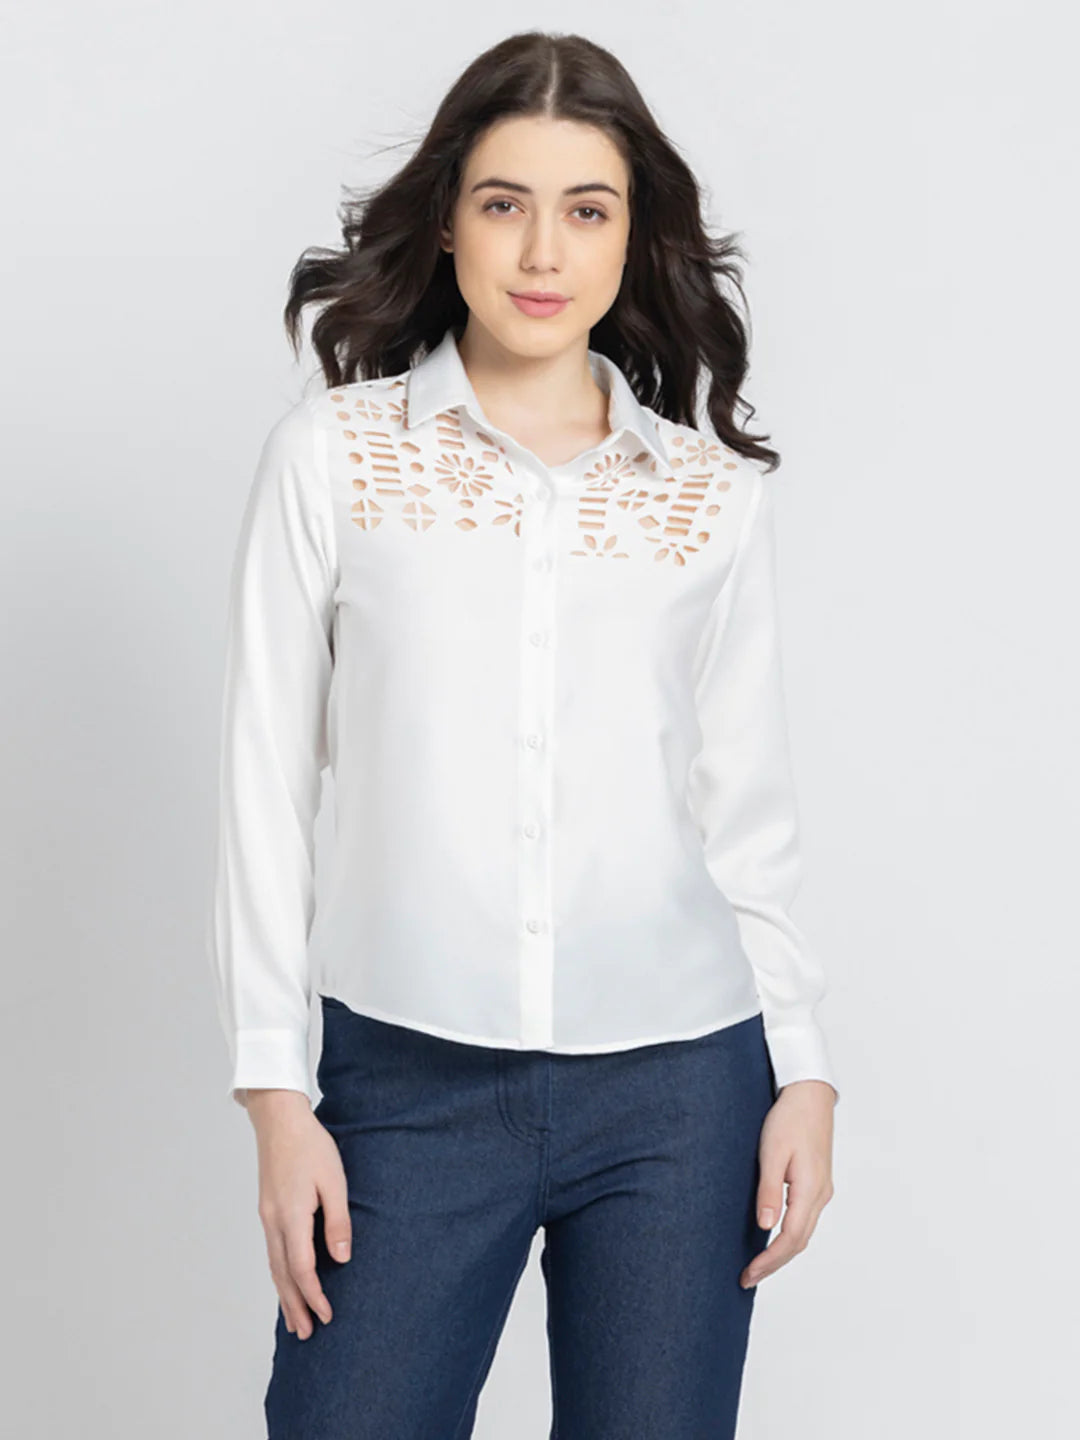 White Party Shirt for Women | Sleek White Lazer-Cut Party Shirt